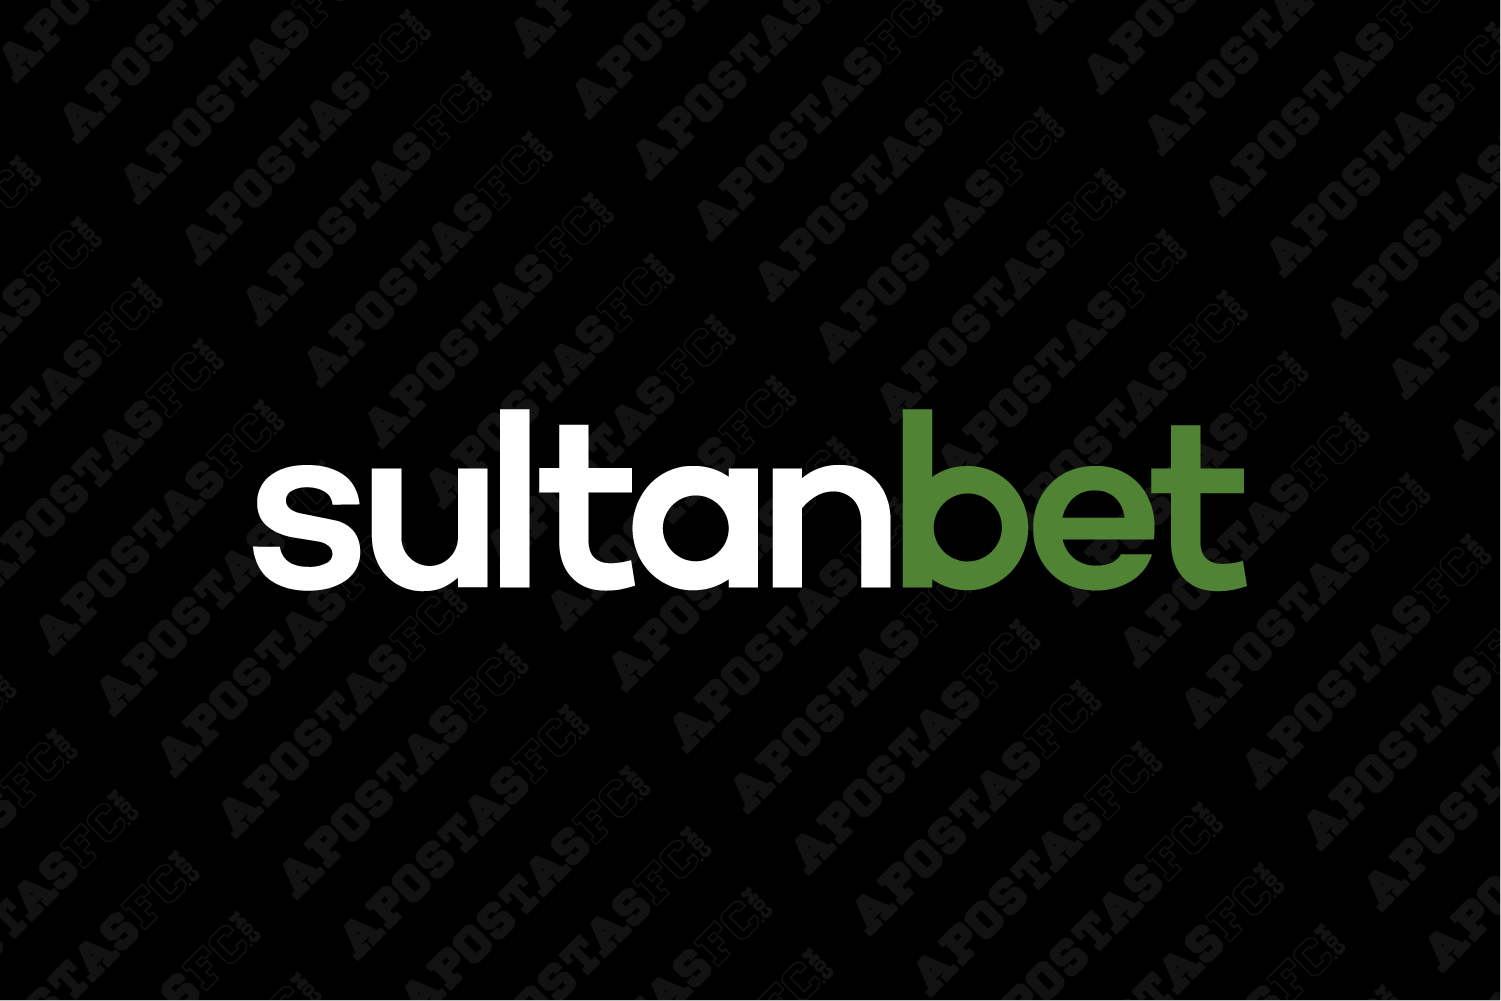 sultanbet-tributação-aposta-esportiva-3